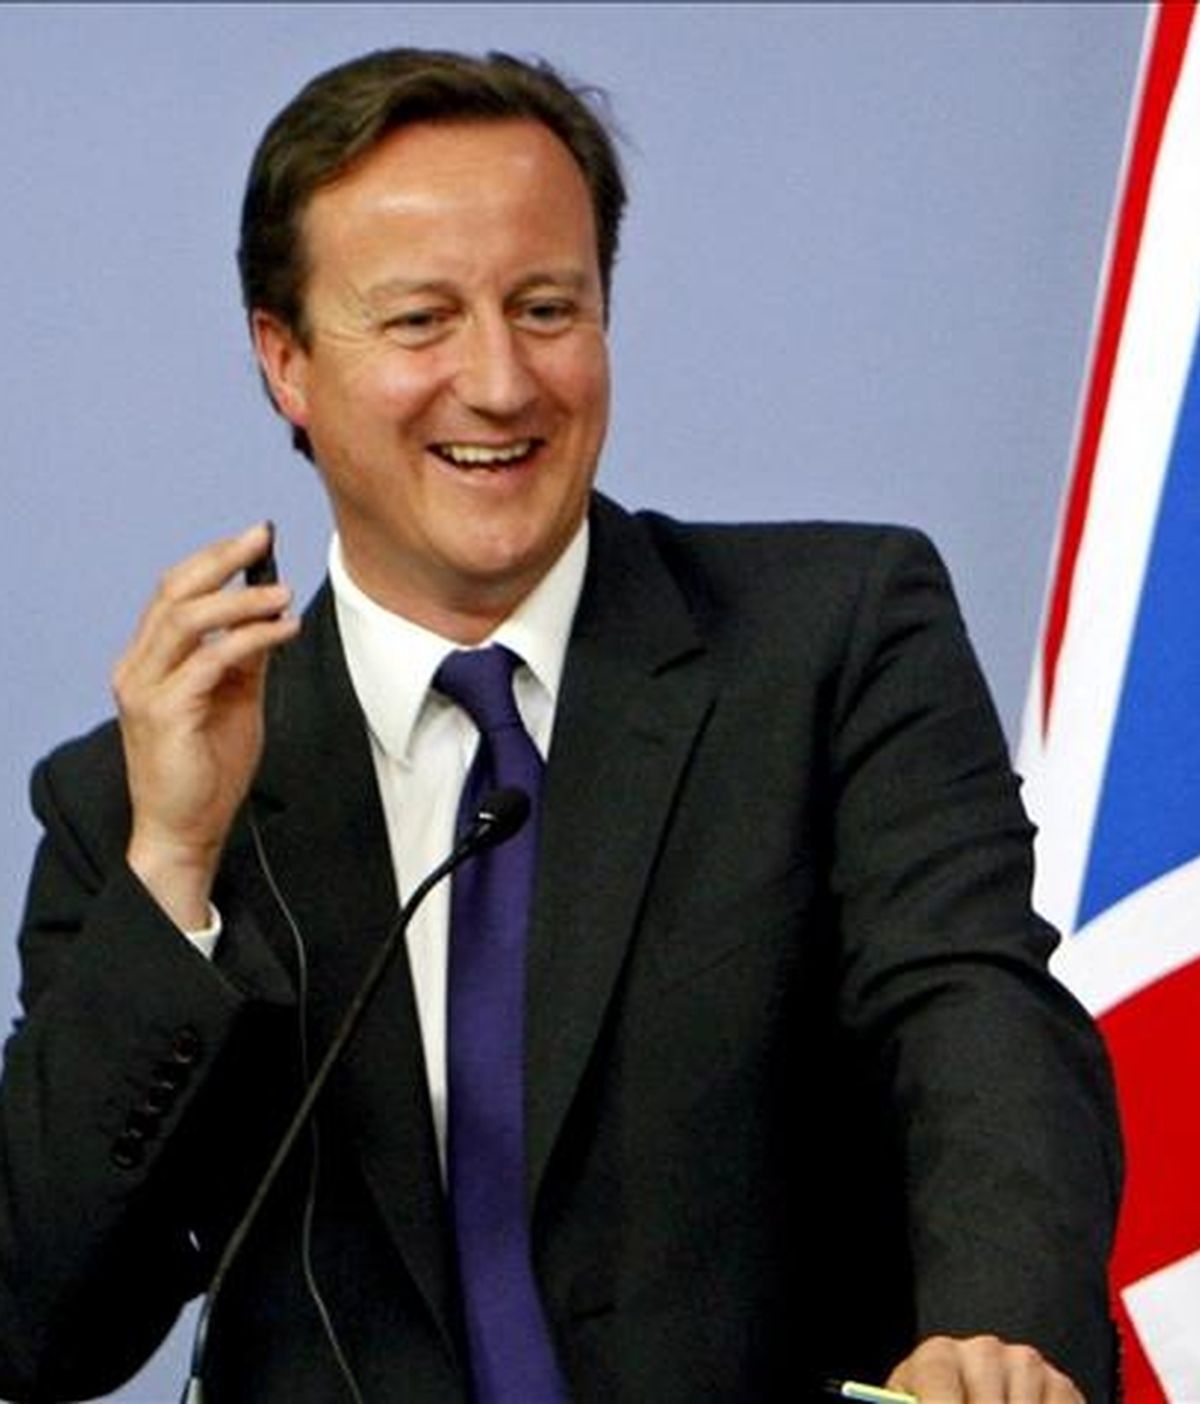 El primer ministro británico, David Cameron. EFE/Archivo